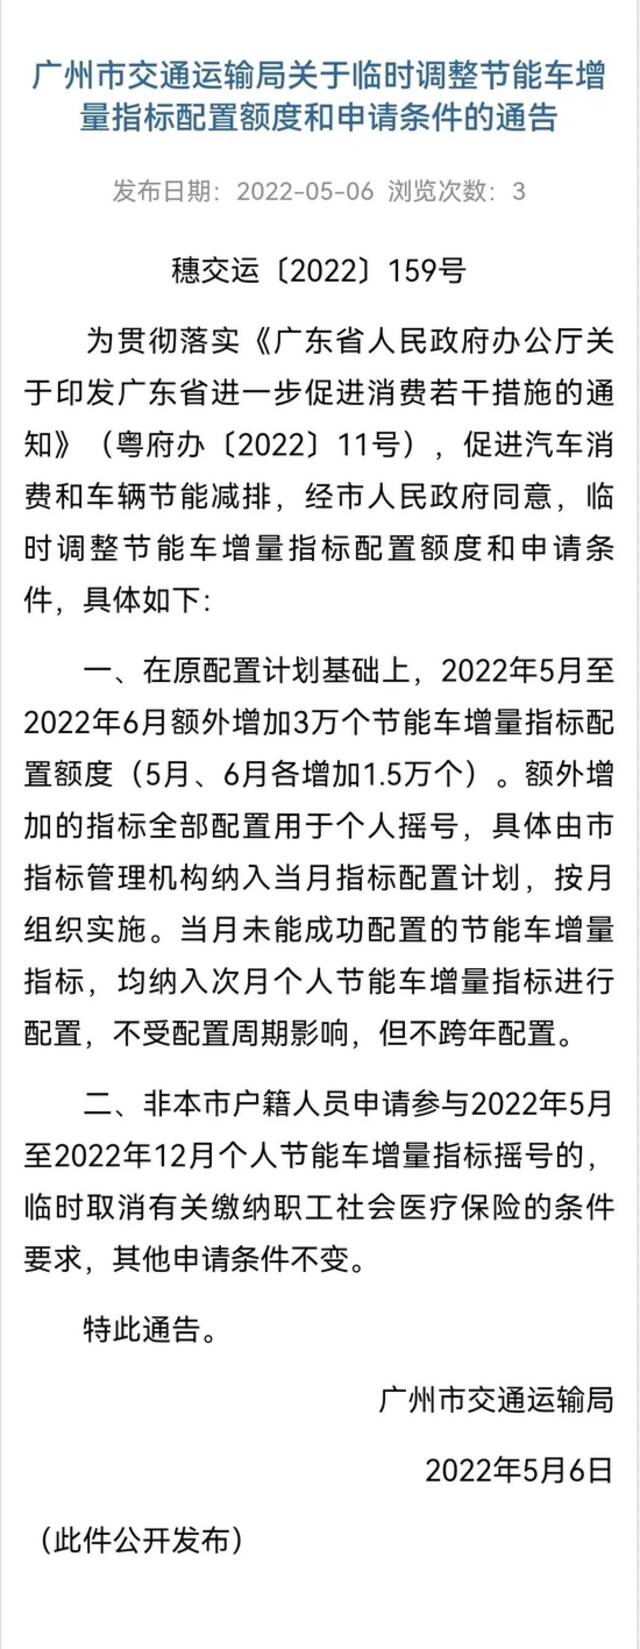 广州市临时调整节能车增量指标配置额度和申请资格条件